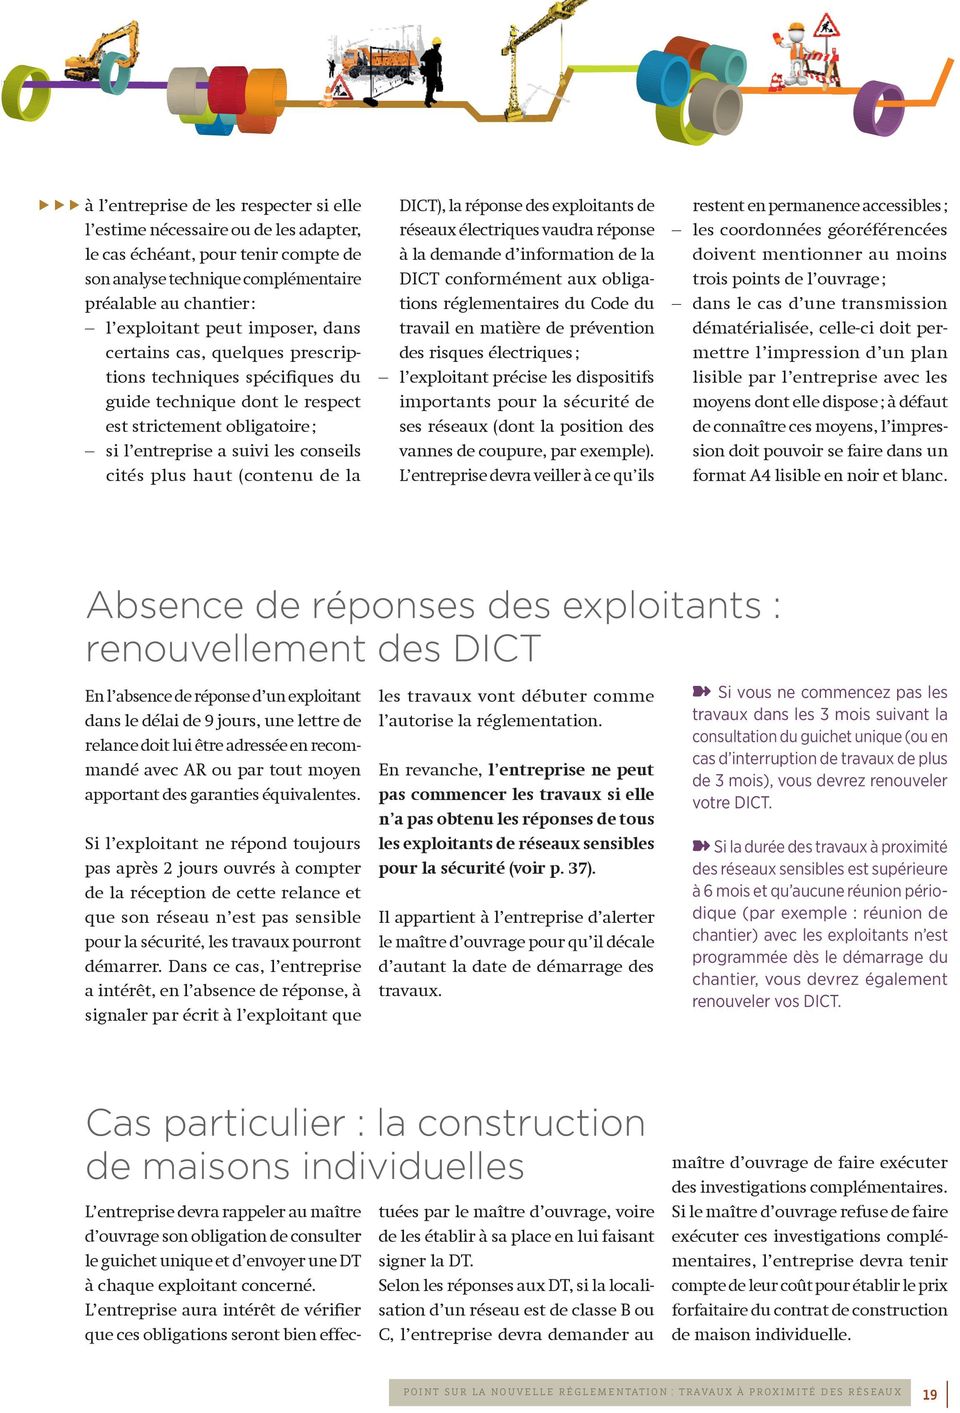 (contenu de la DICT), la réponse des exploitants de réseaux électriques vaudra réponse à la demande d information de la DICT conformément aux obligations réglementaires du Code du travail en matière